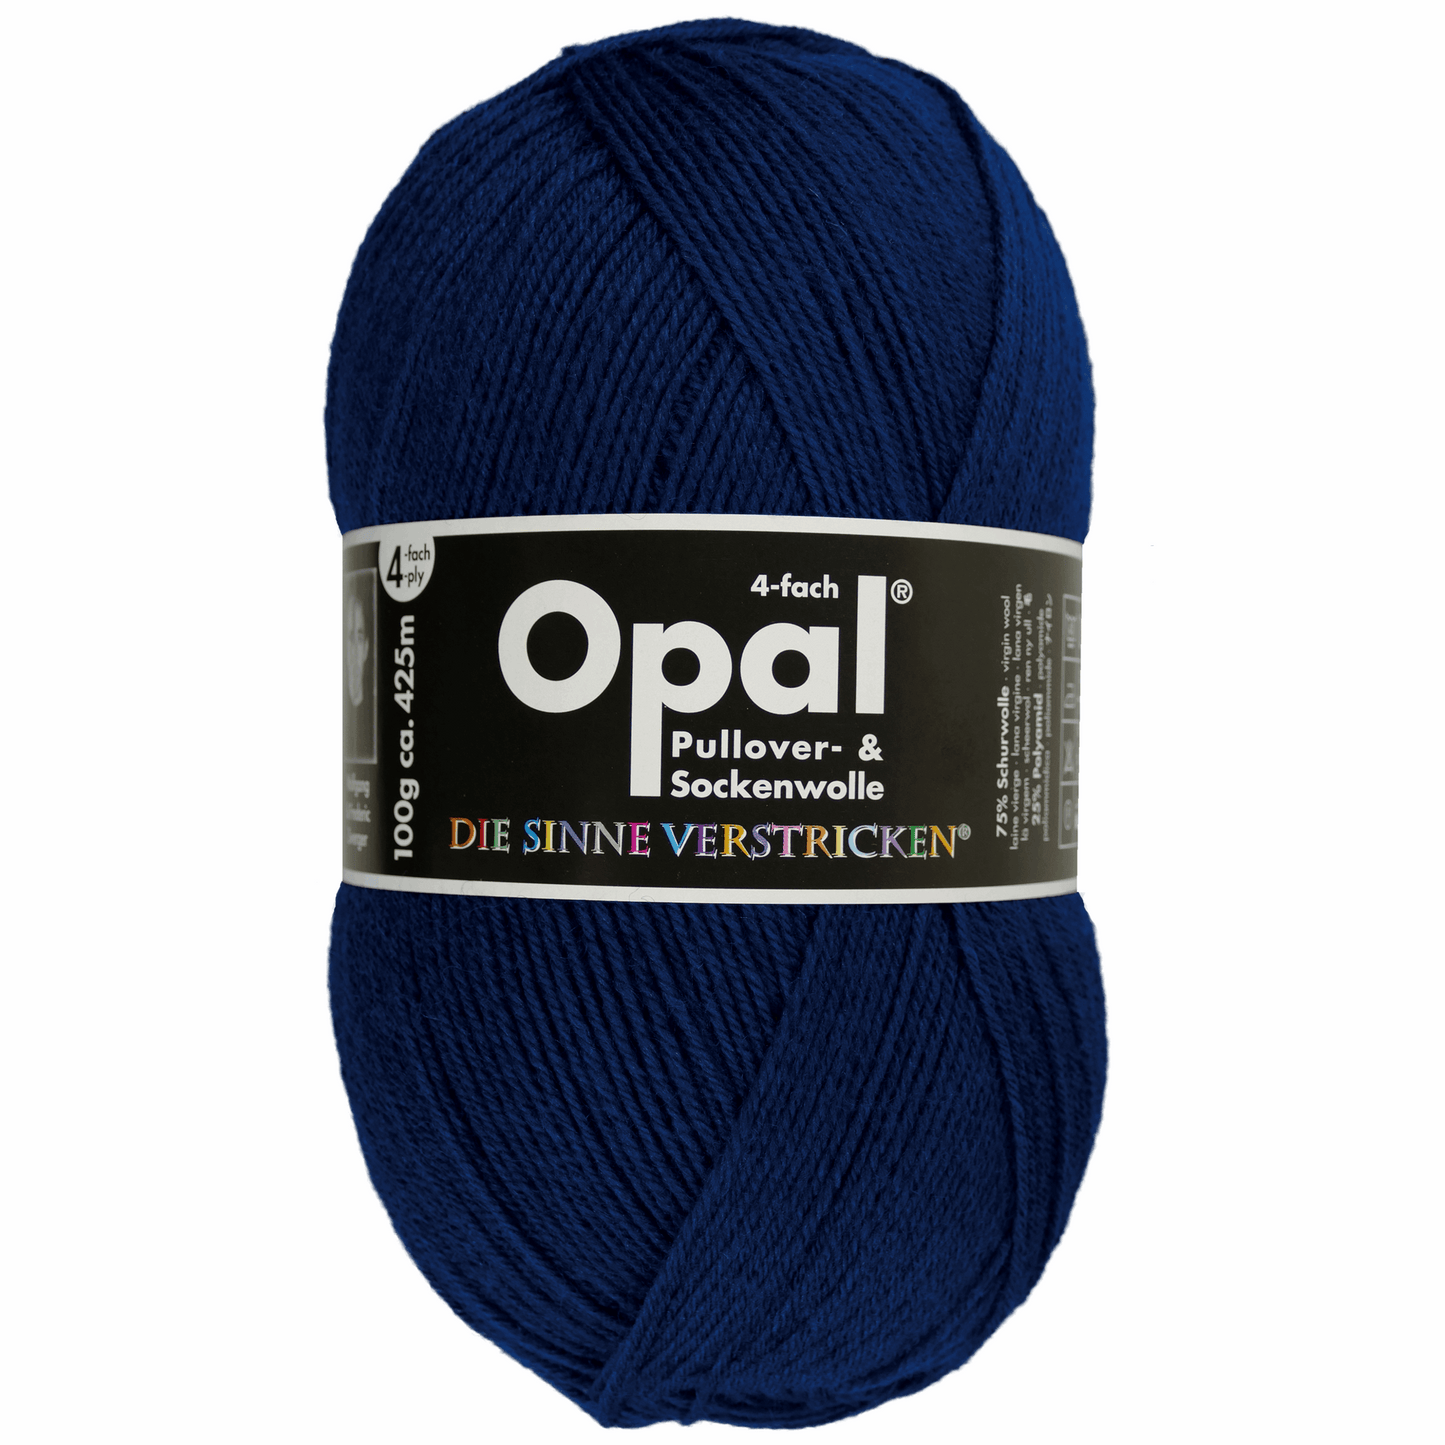 Opal plain 4 threads. 100g 2011/12, 97760, color navy 9930